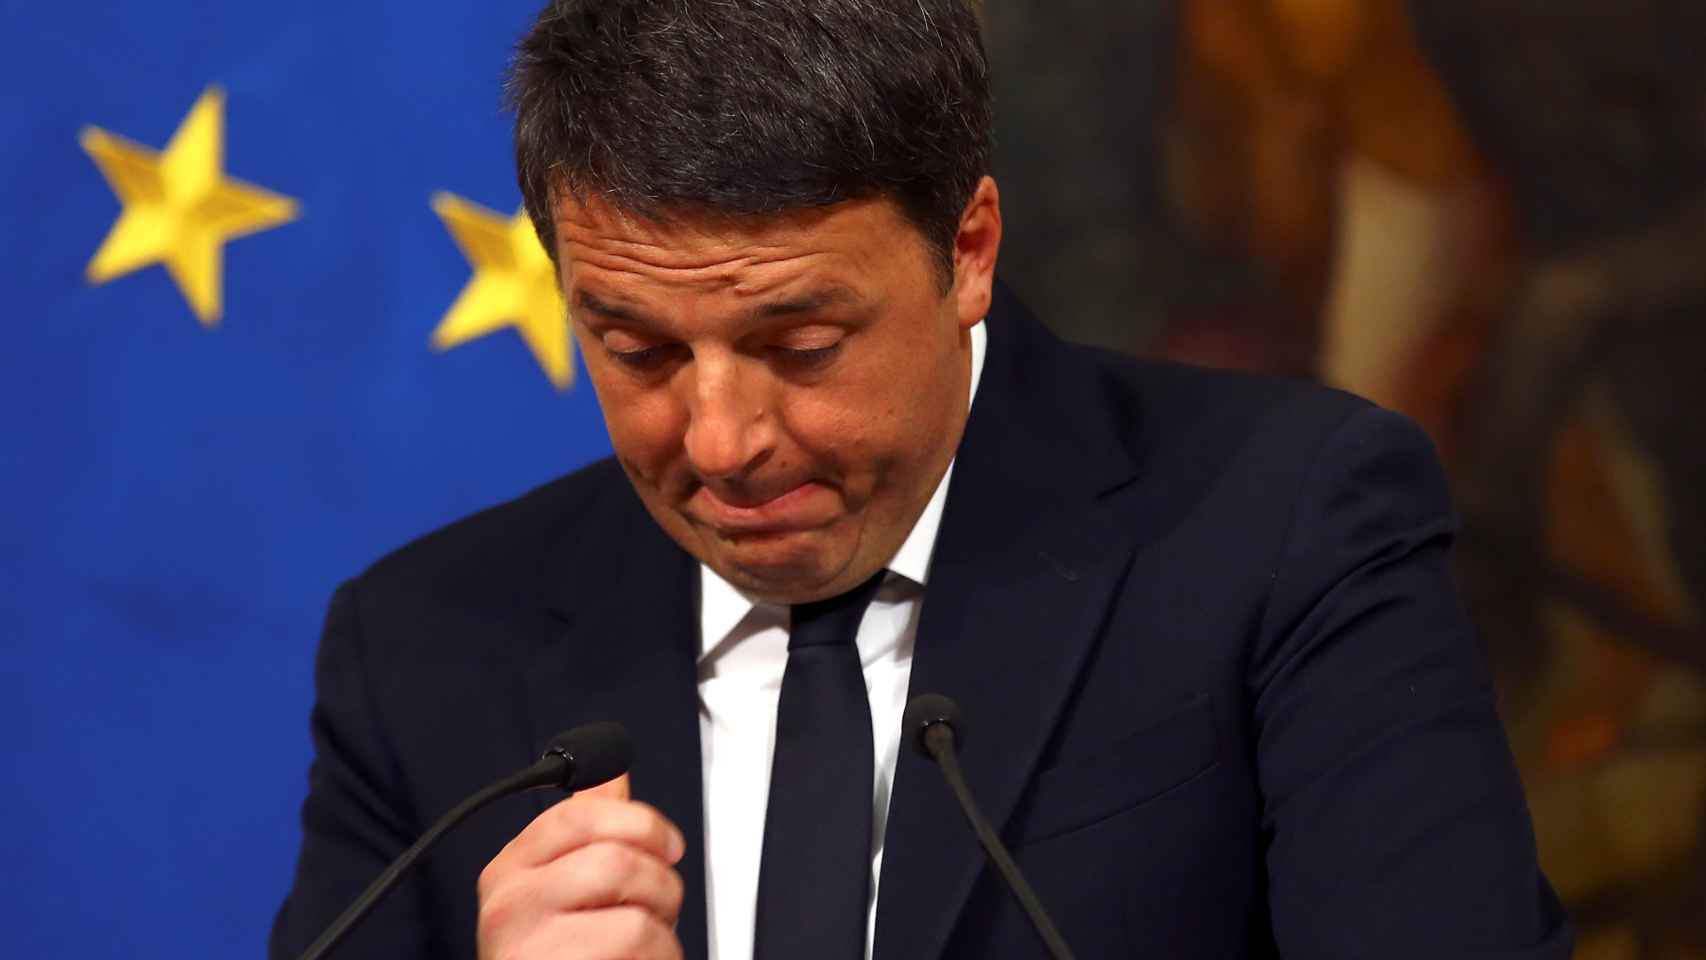 Renzi, durante su alocución tras el referendo.